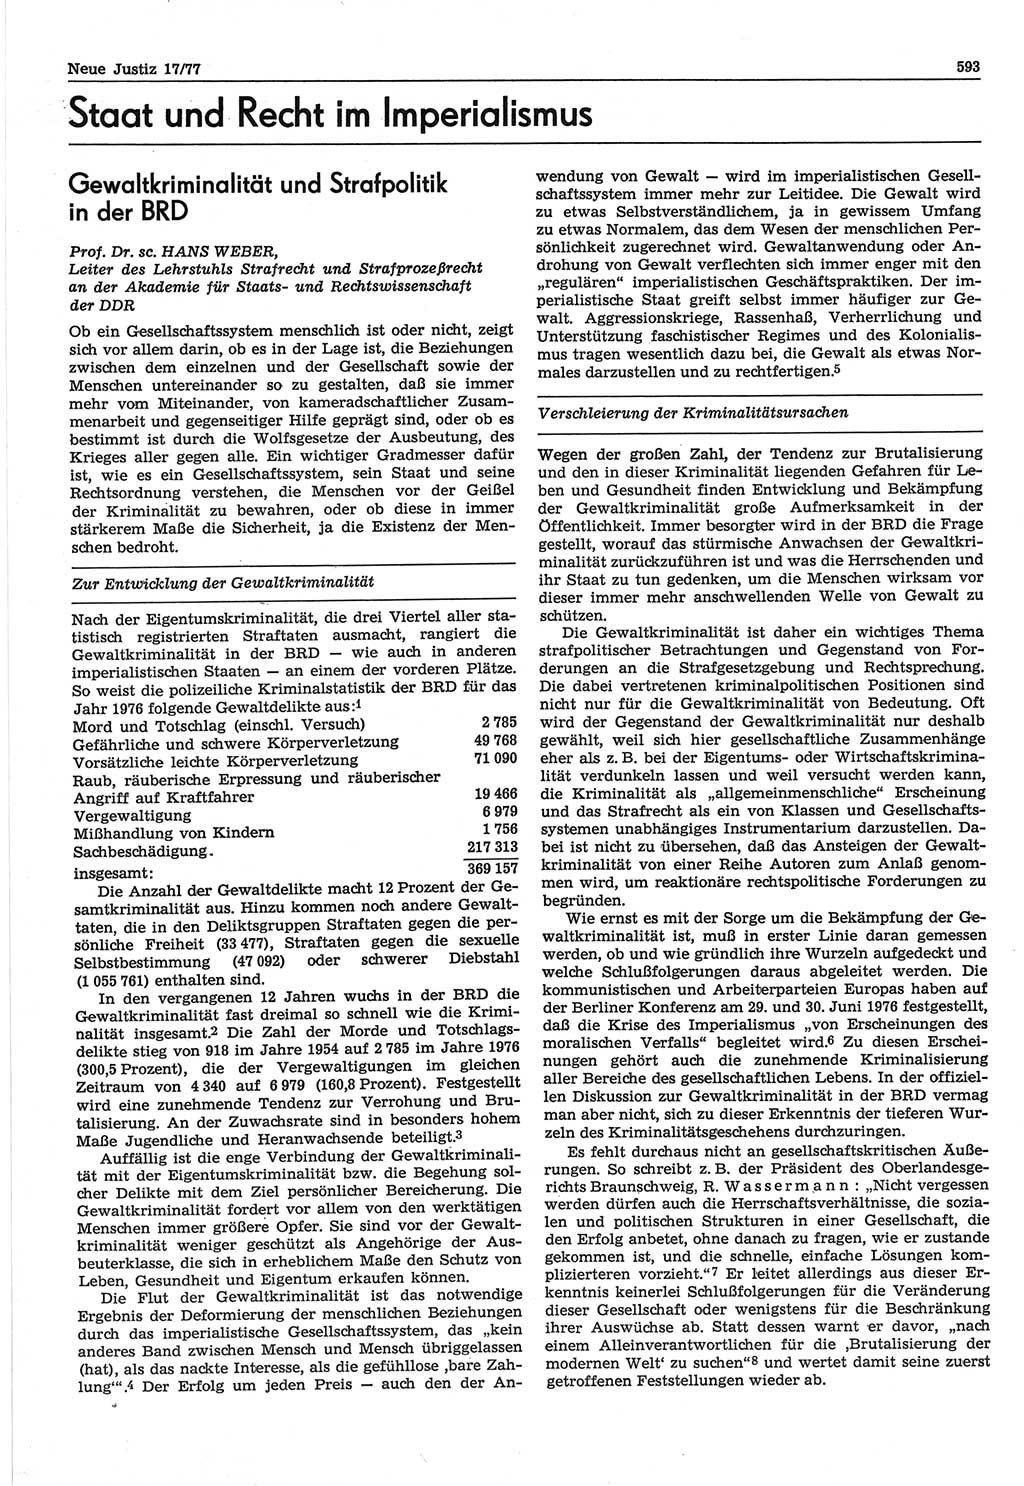 Neue Justiz (NJ), Zeitschrift für Recht und Rechtswissenschaft-Zeitschrift, sozialistisches Recht und Gesetzlichkeit, 31. Jahrgang 1977, Seite 593 (NJ DDR 1977, S. 593)